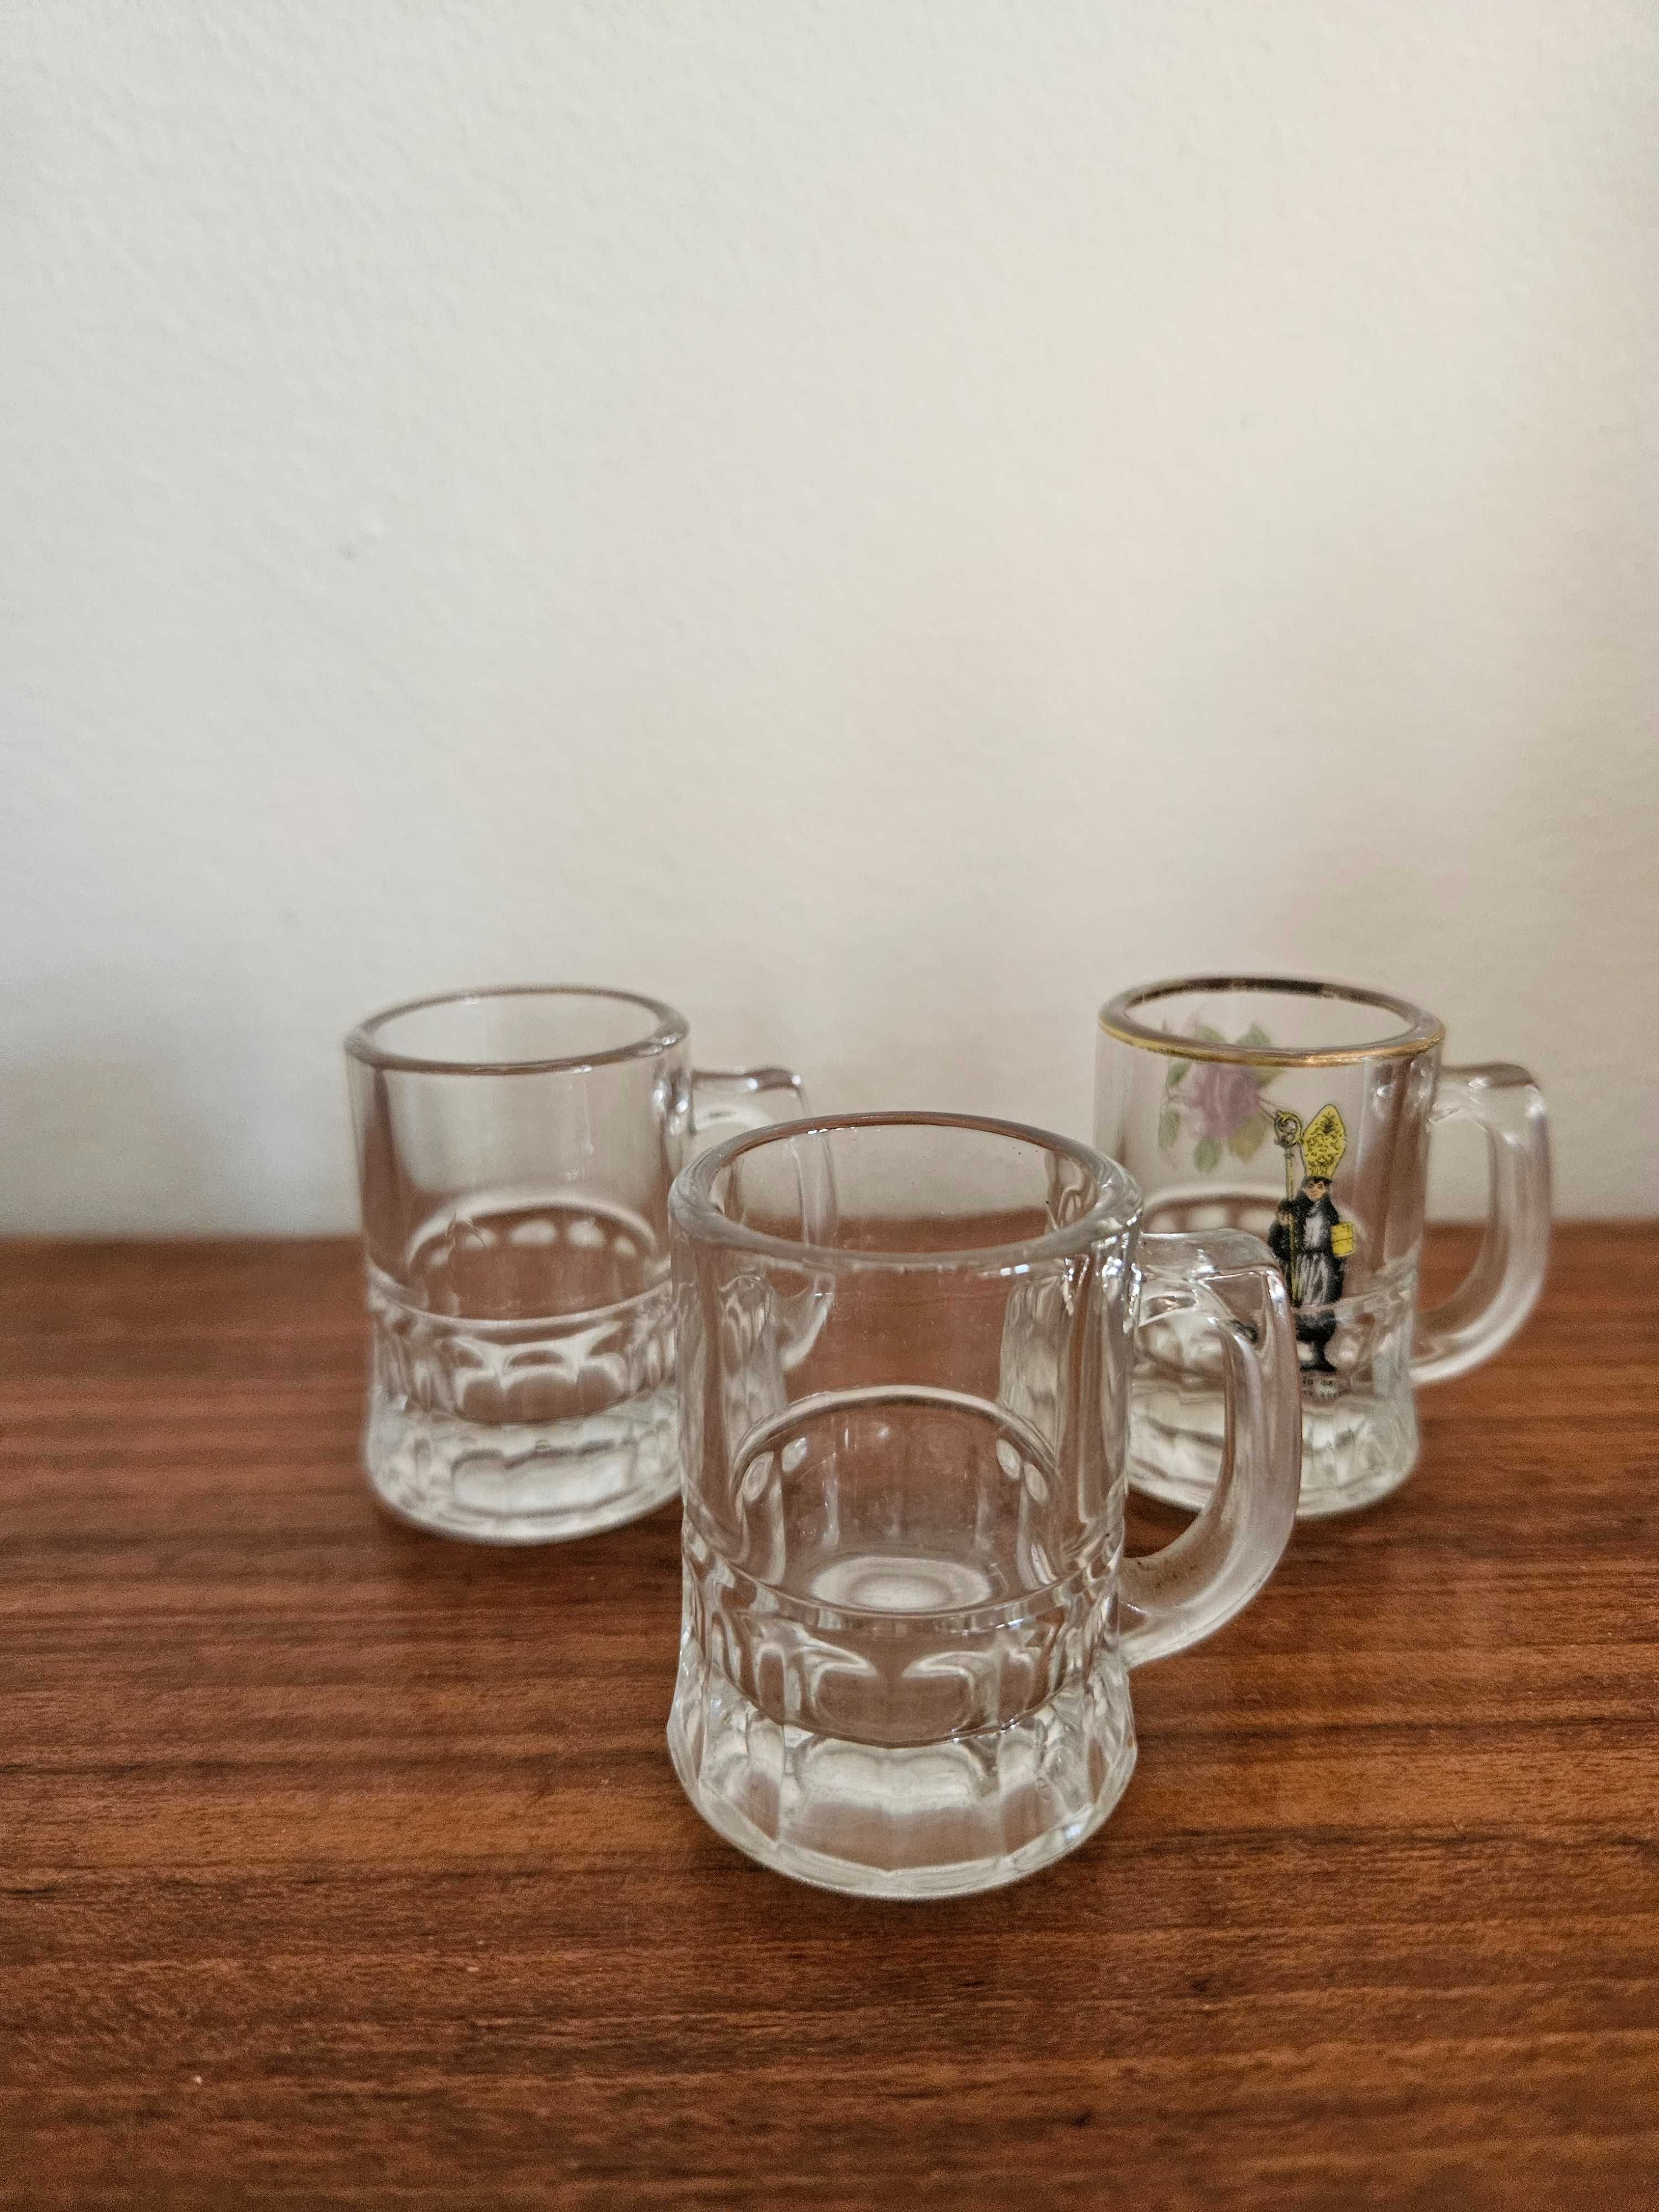 Lote - copos pequenos de vidro - aguardente/licor